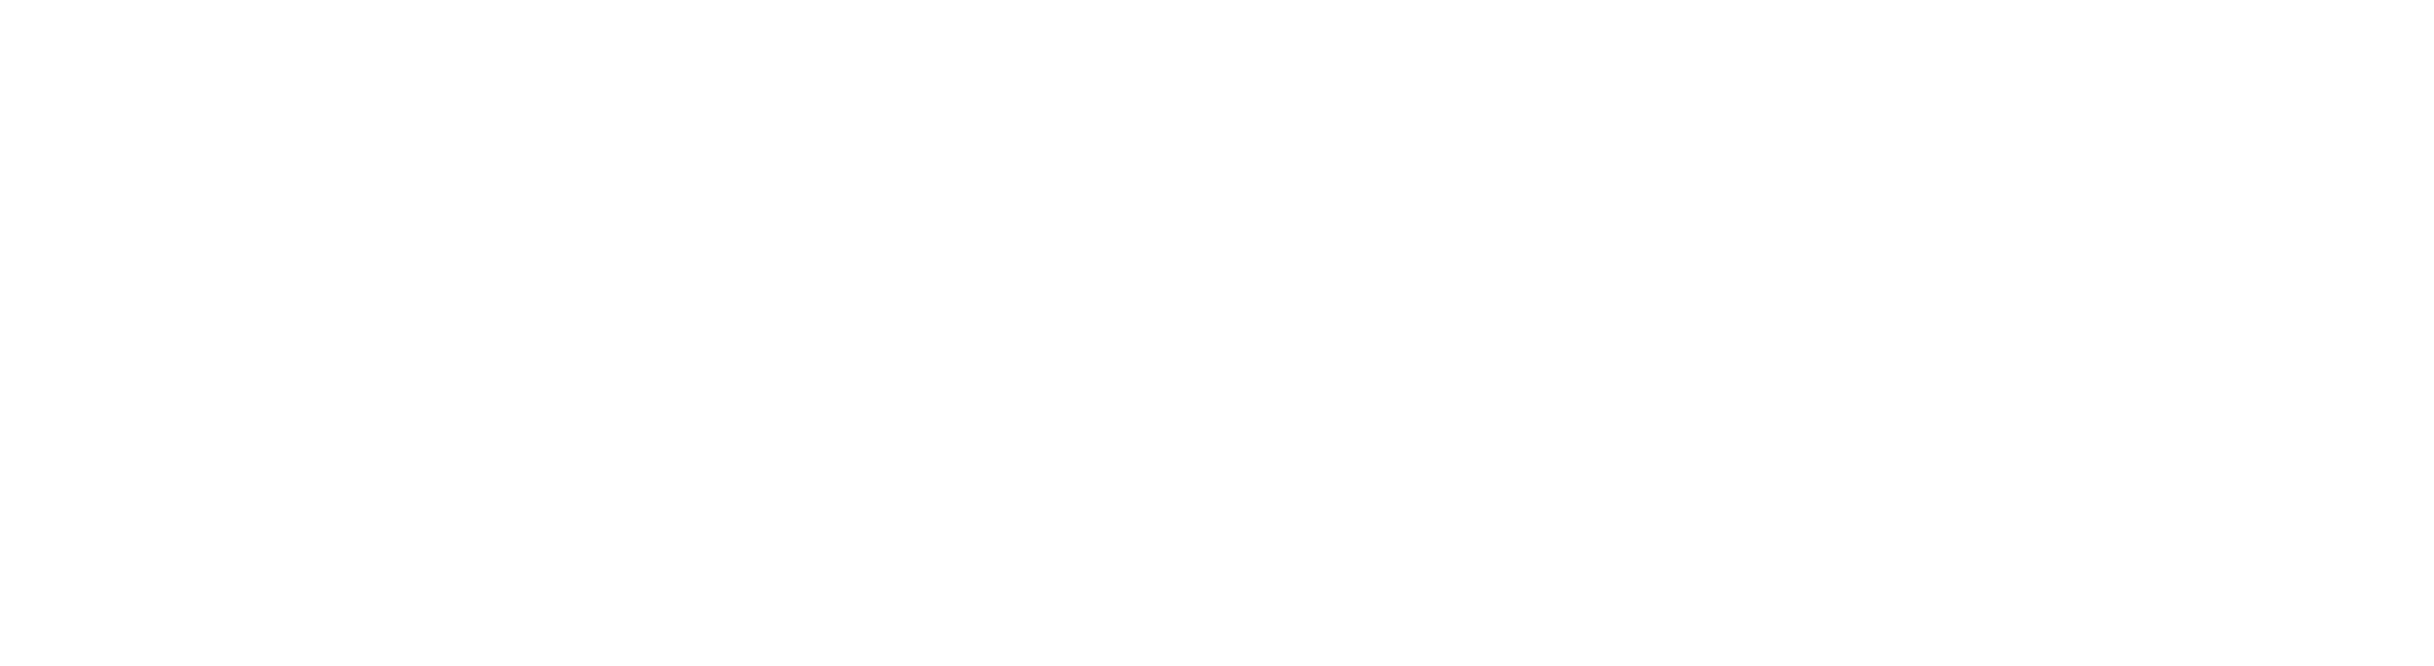 PG Horizontal White Logo